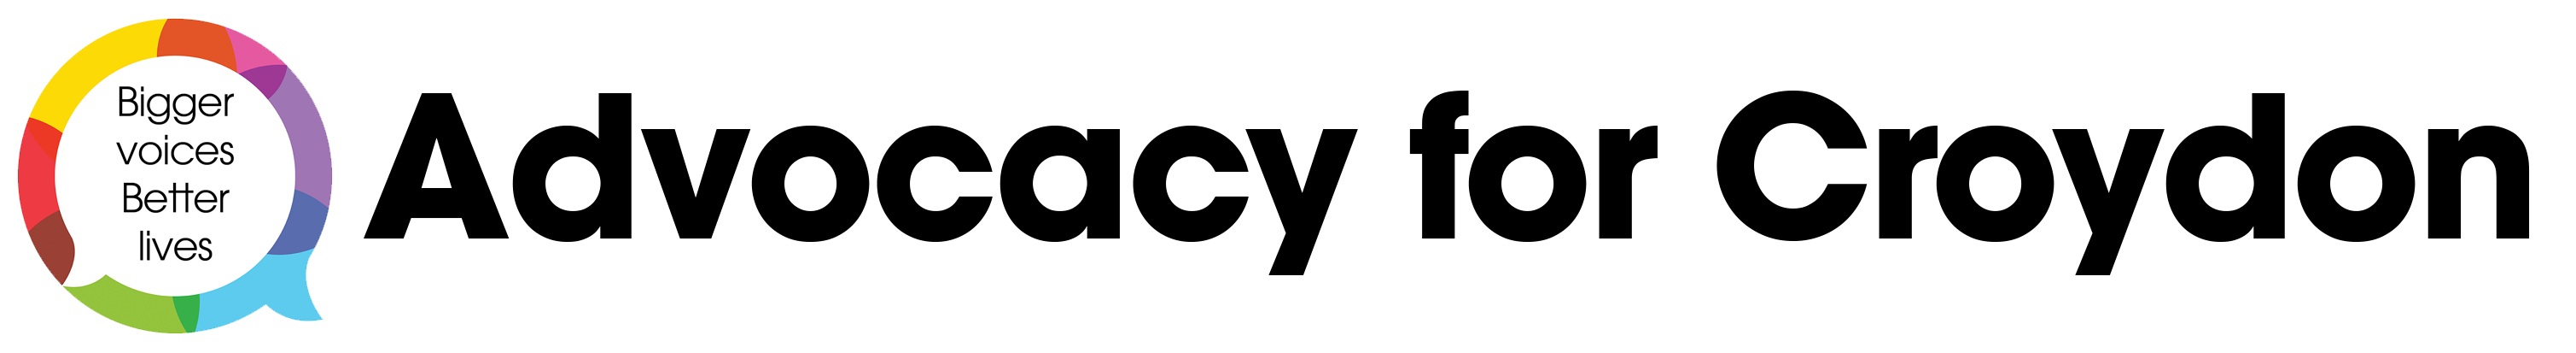 advocacy for croydon logo